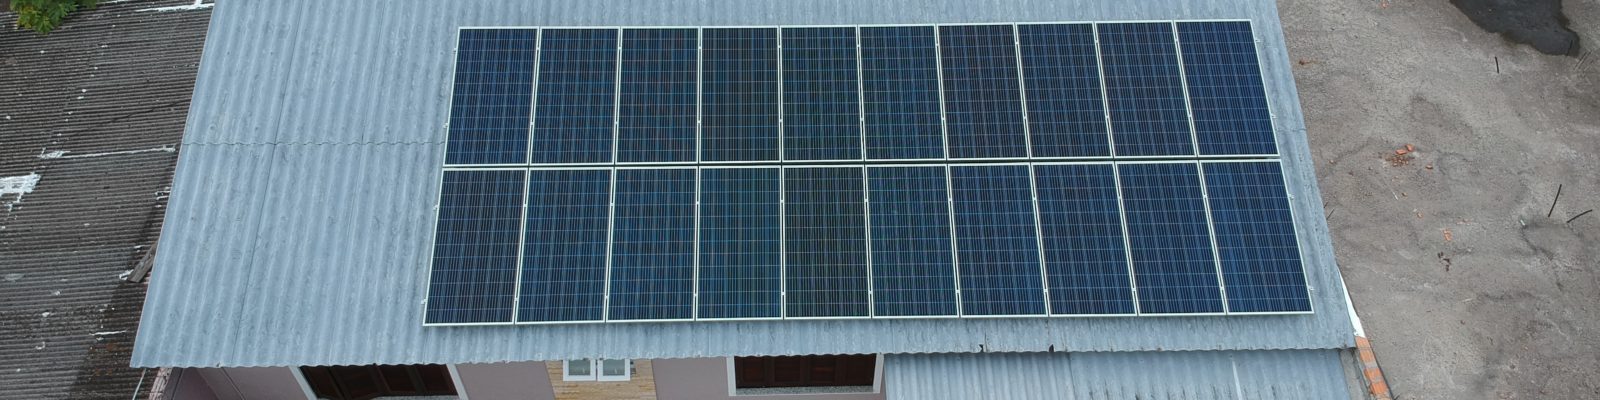 Energia fotovoltaica em Osório - Elysia energia solar RS